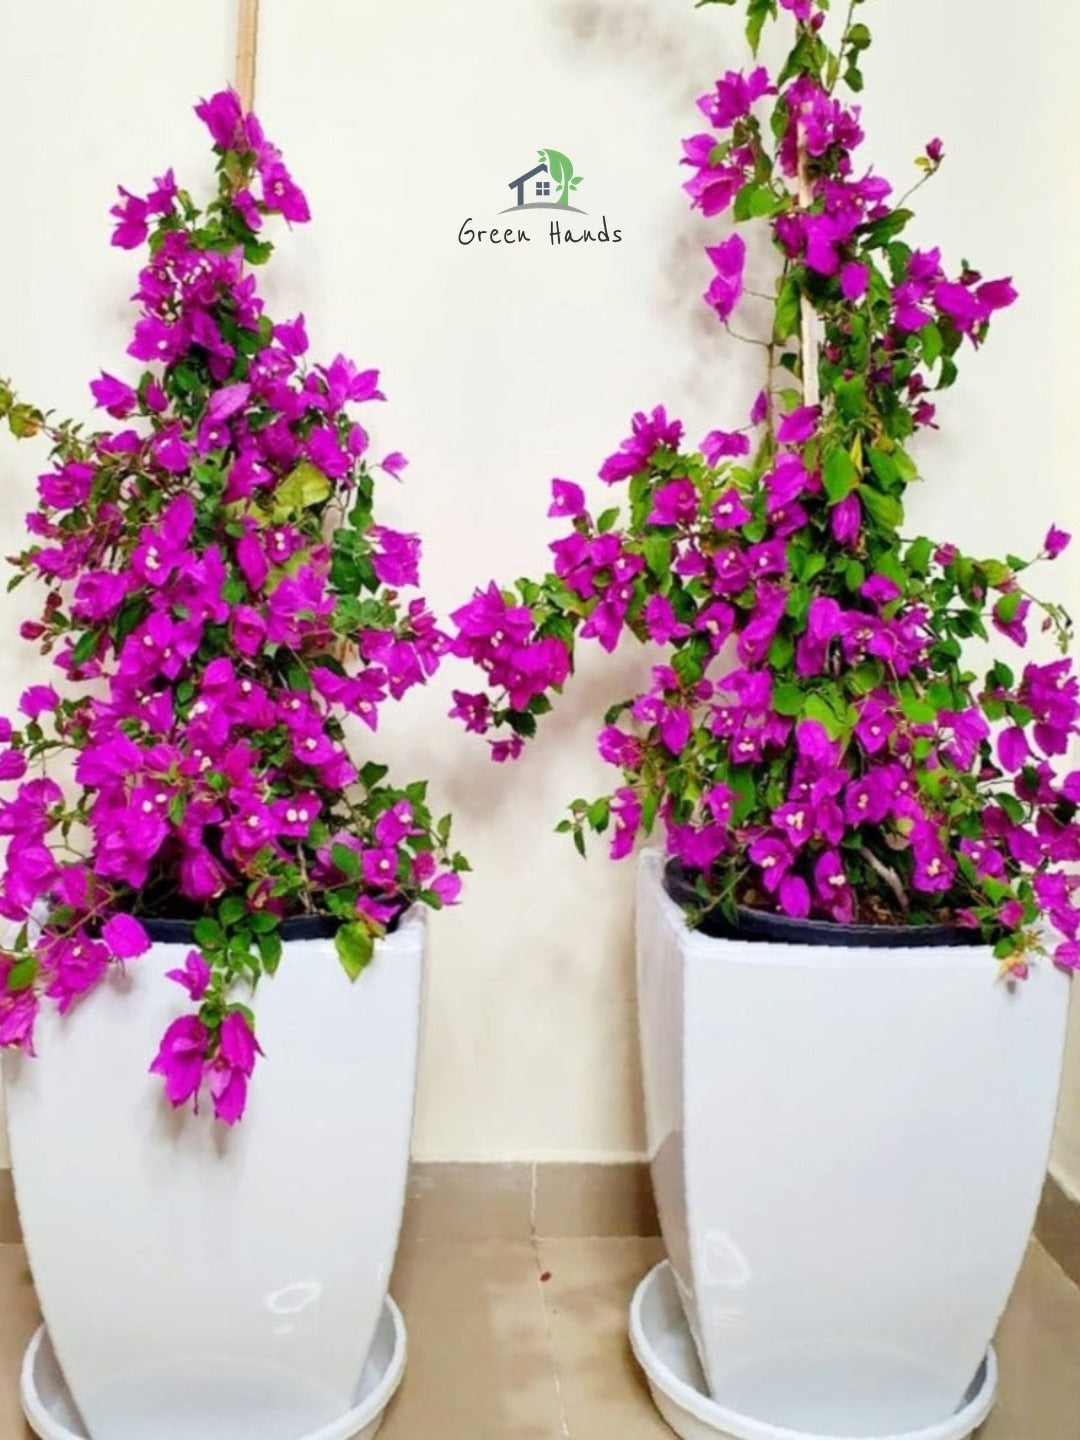 dubai garden center Bright Purple Bougainvillea plant | Potted in Glossy White Ceramic Pot green hands